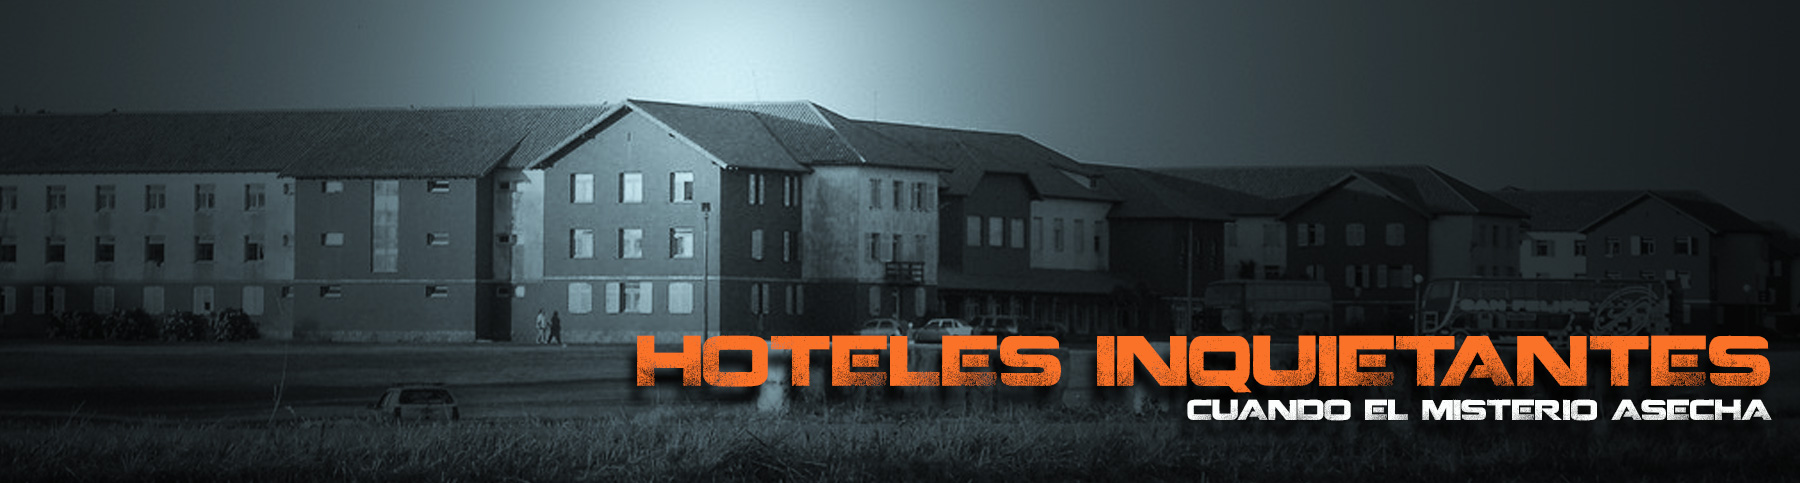 HOTELES-1